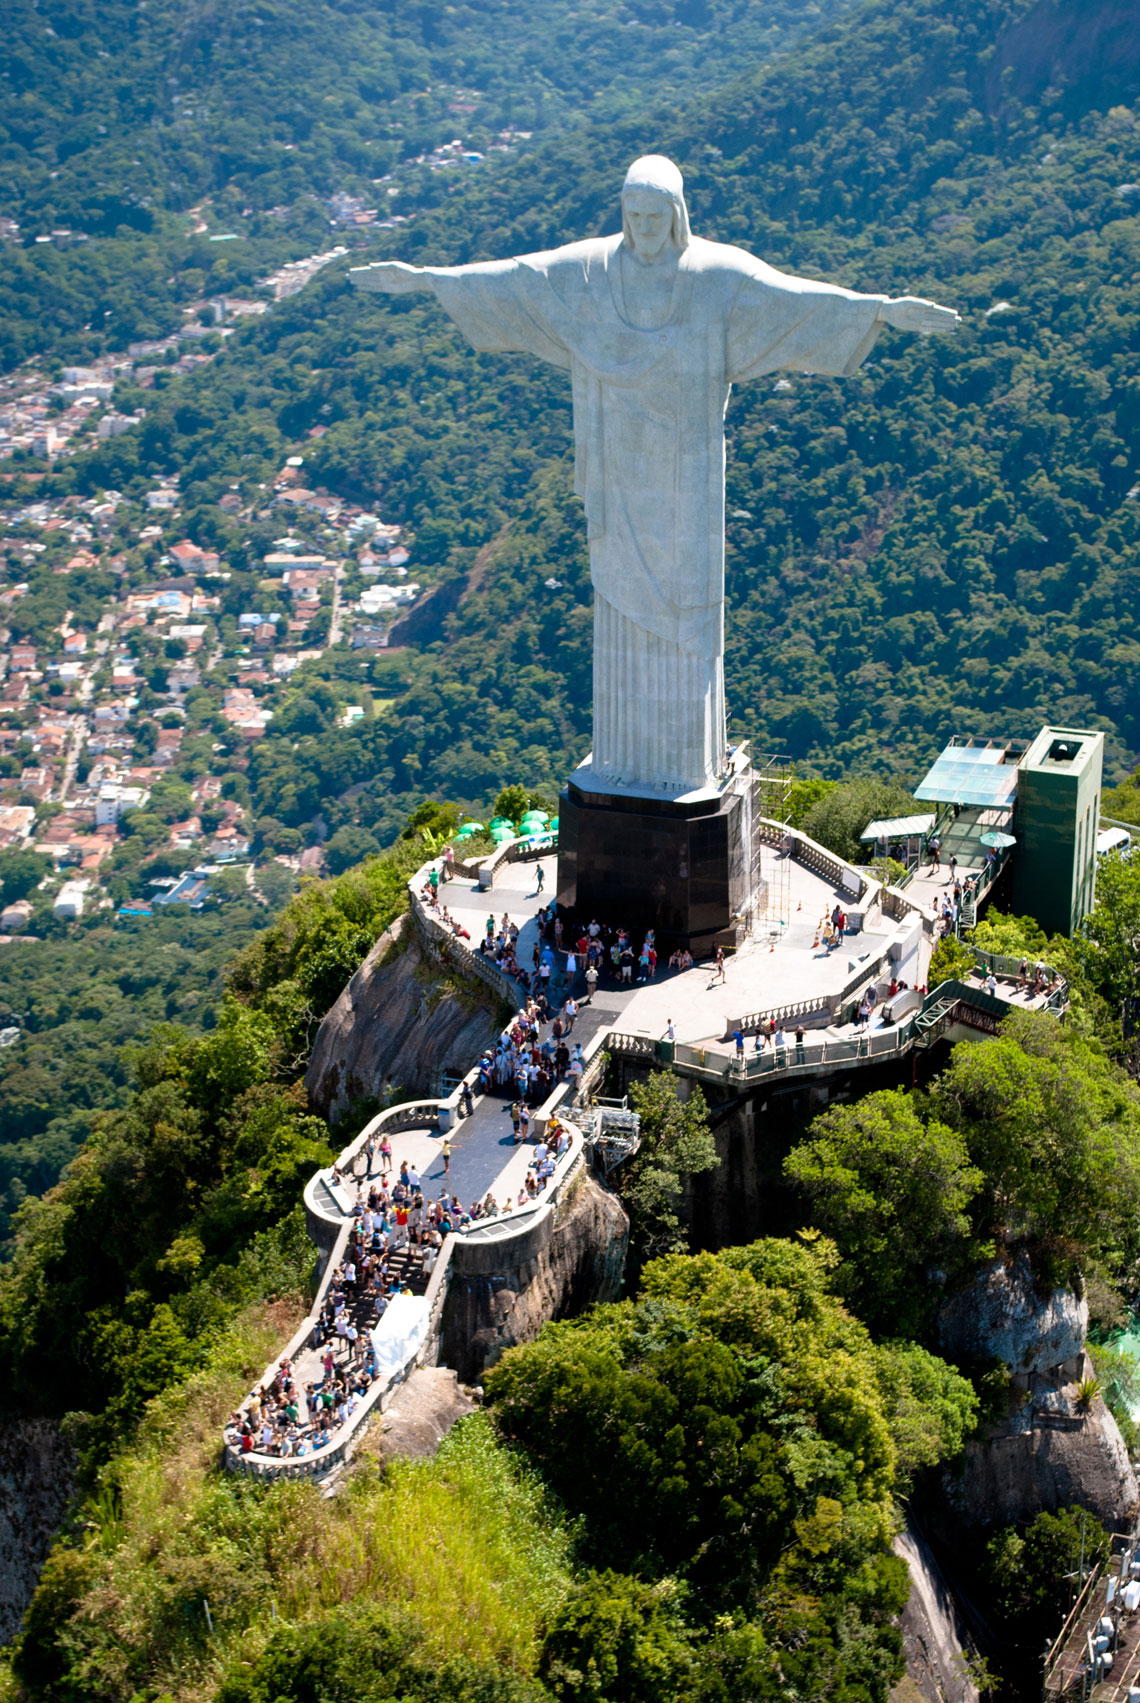 Статуя Христа Викупителя в Ріо-де-Жанейро є одним з найвідоміших і найпопулярніших у світі монументів. Щорічно не менше 1,8 мільйона туристів піднімаються до його підніжжя, звідки відкривається панорама міста та бухти з мальовничою горою Цукрова Голова, знаменитими пляжами Копакабана та Іпанема, величезною чашею стадіону «Маракана».